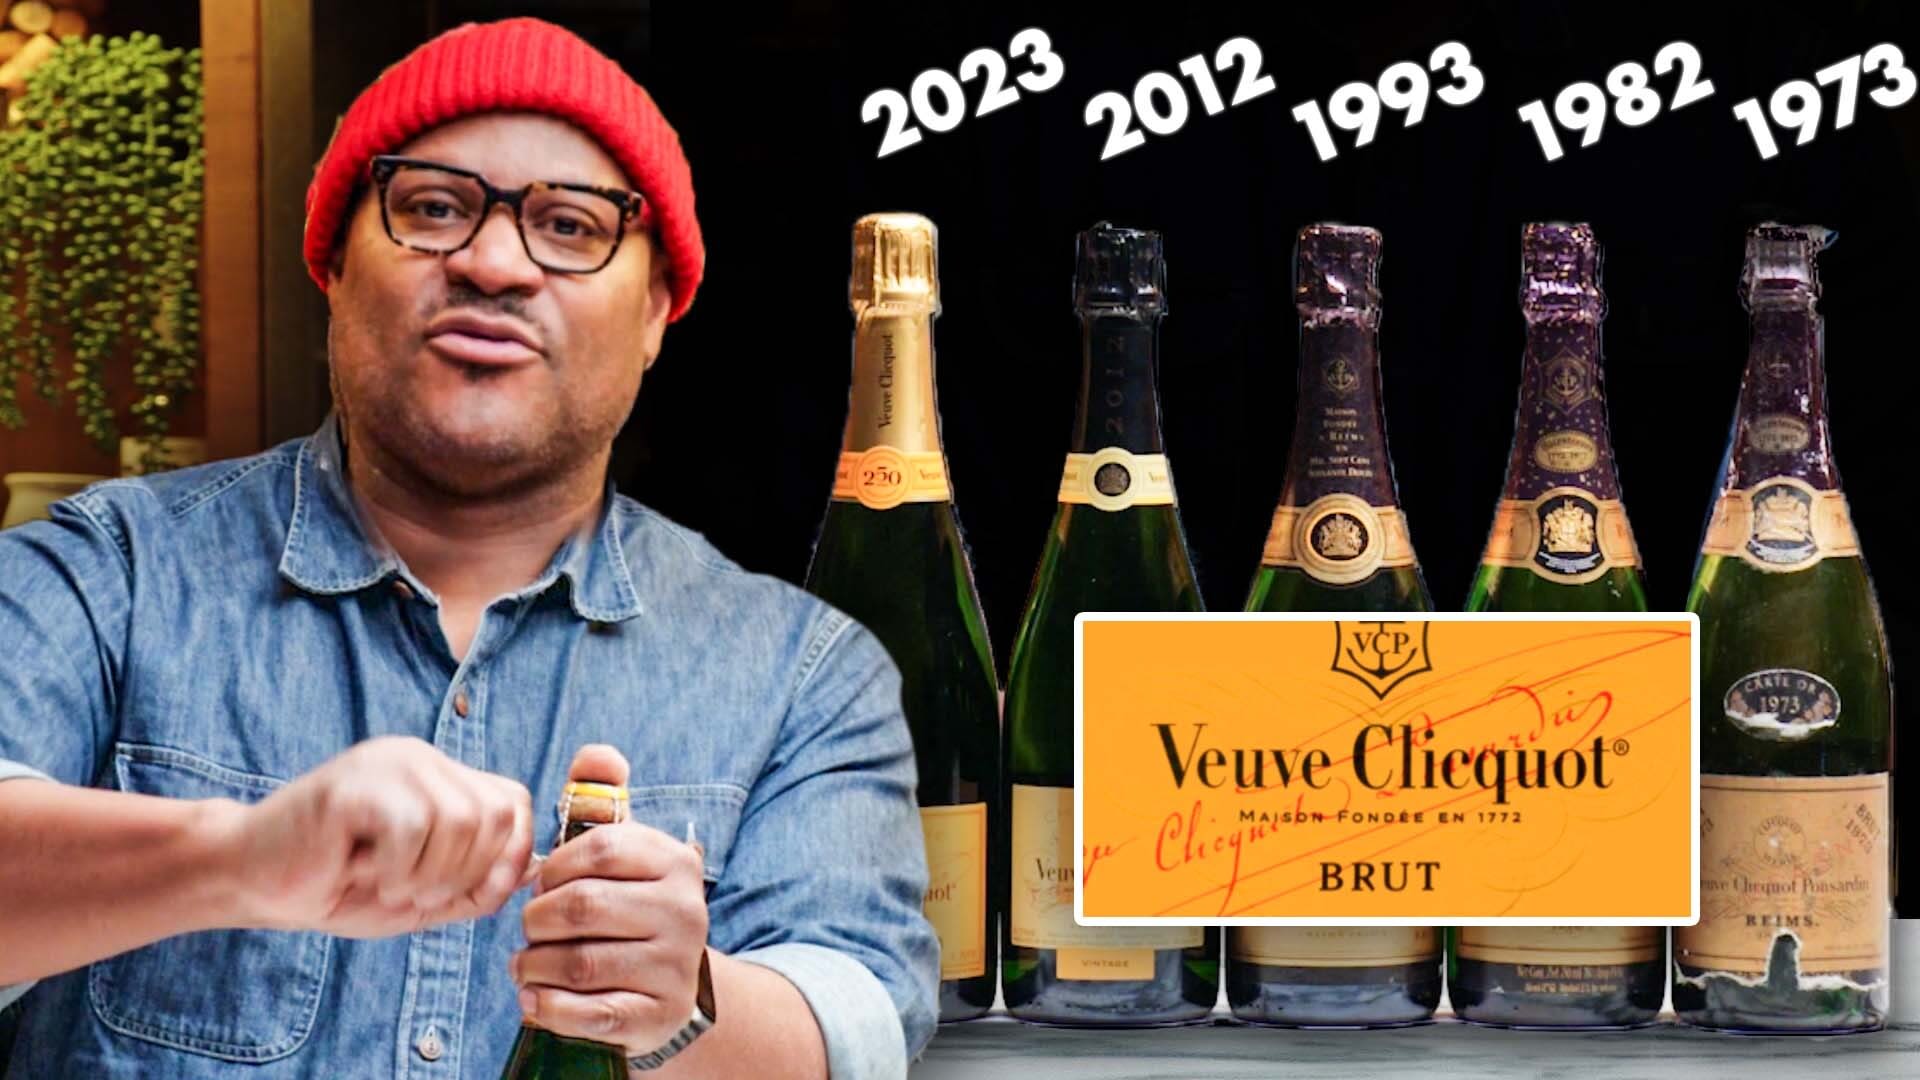 Veuve Clicquot Vintage Brut Gold Label 2012